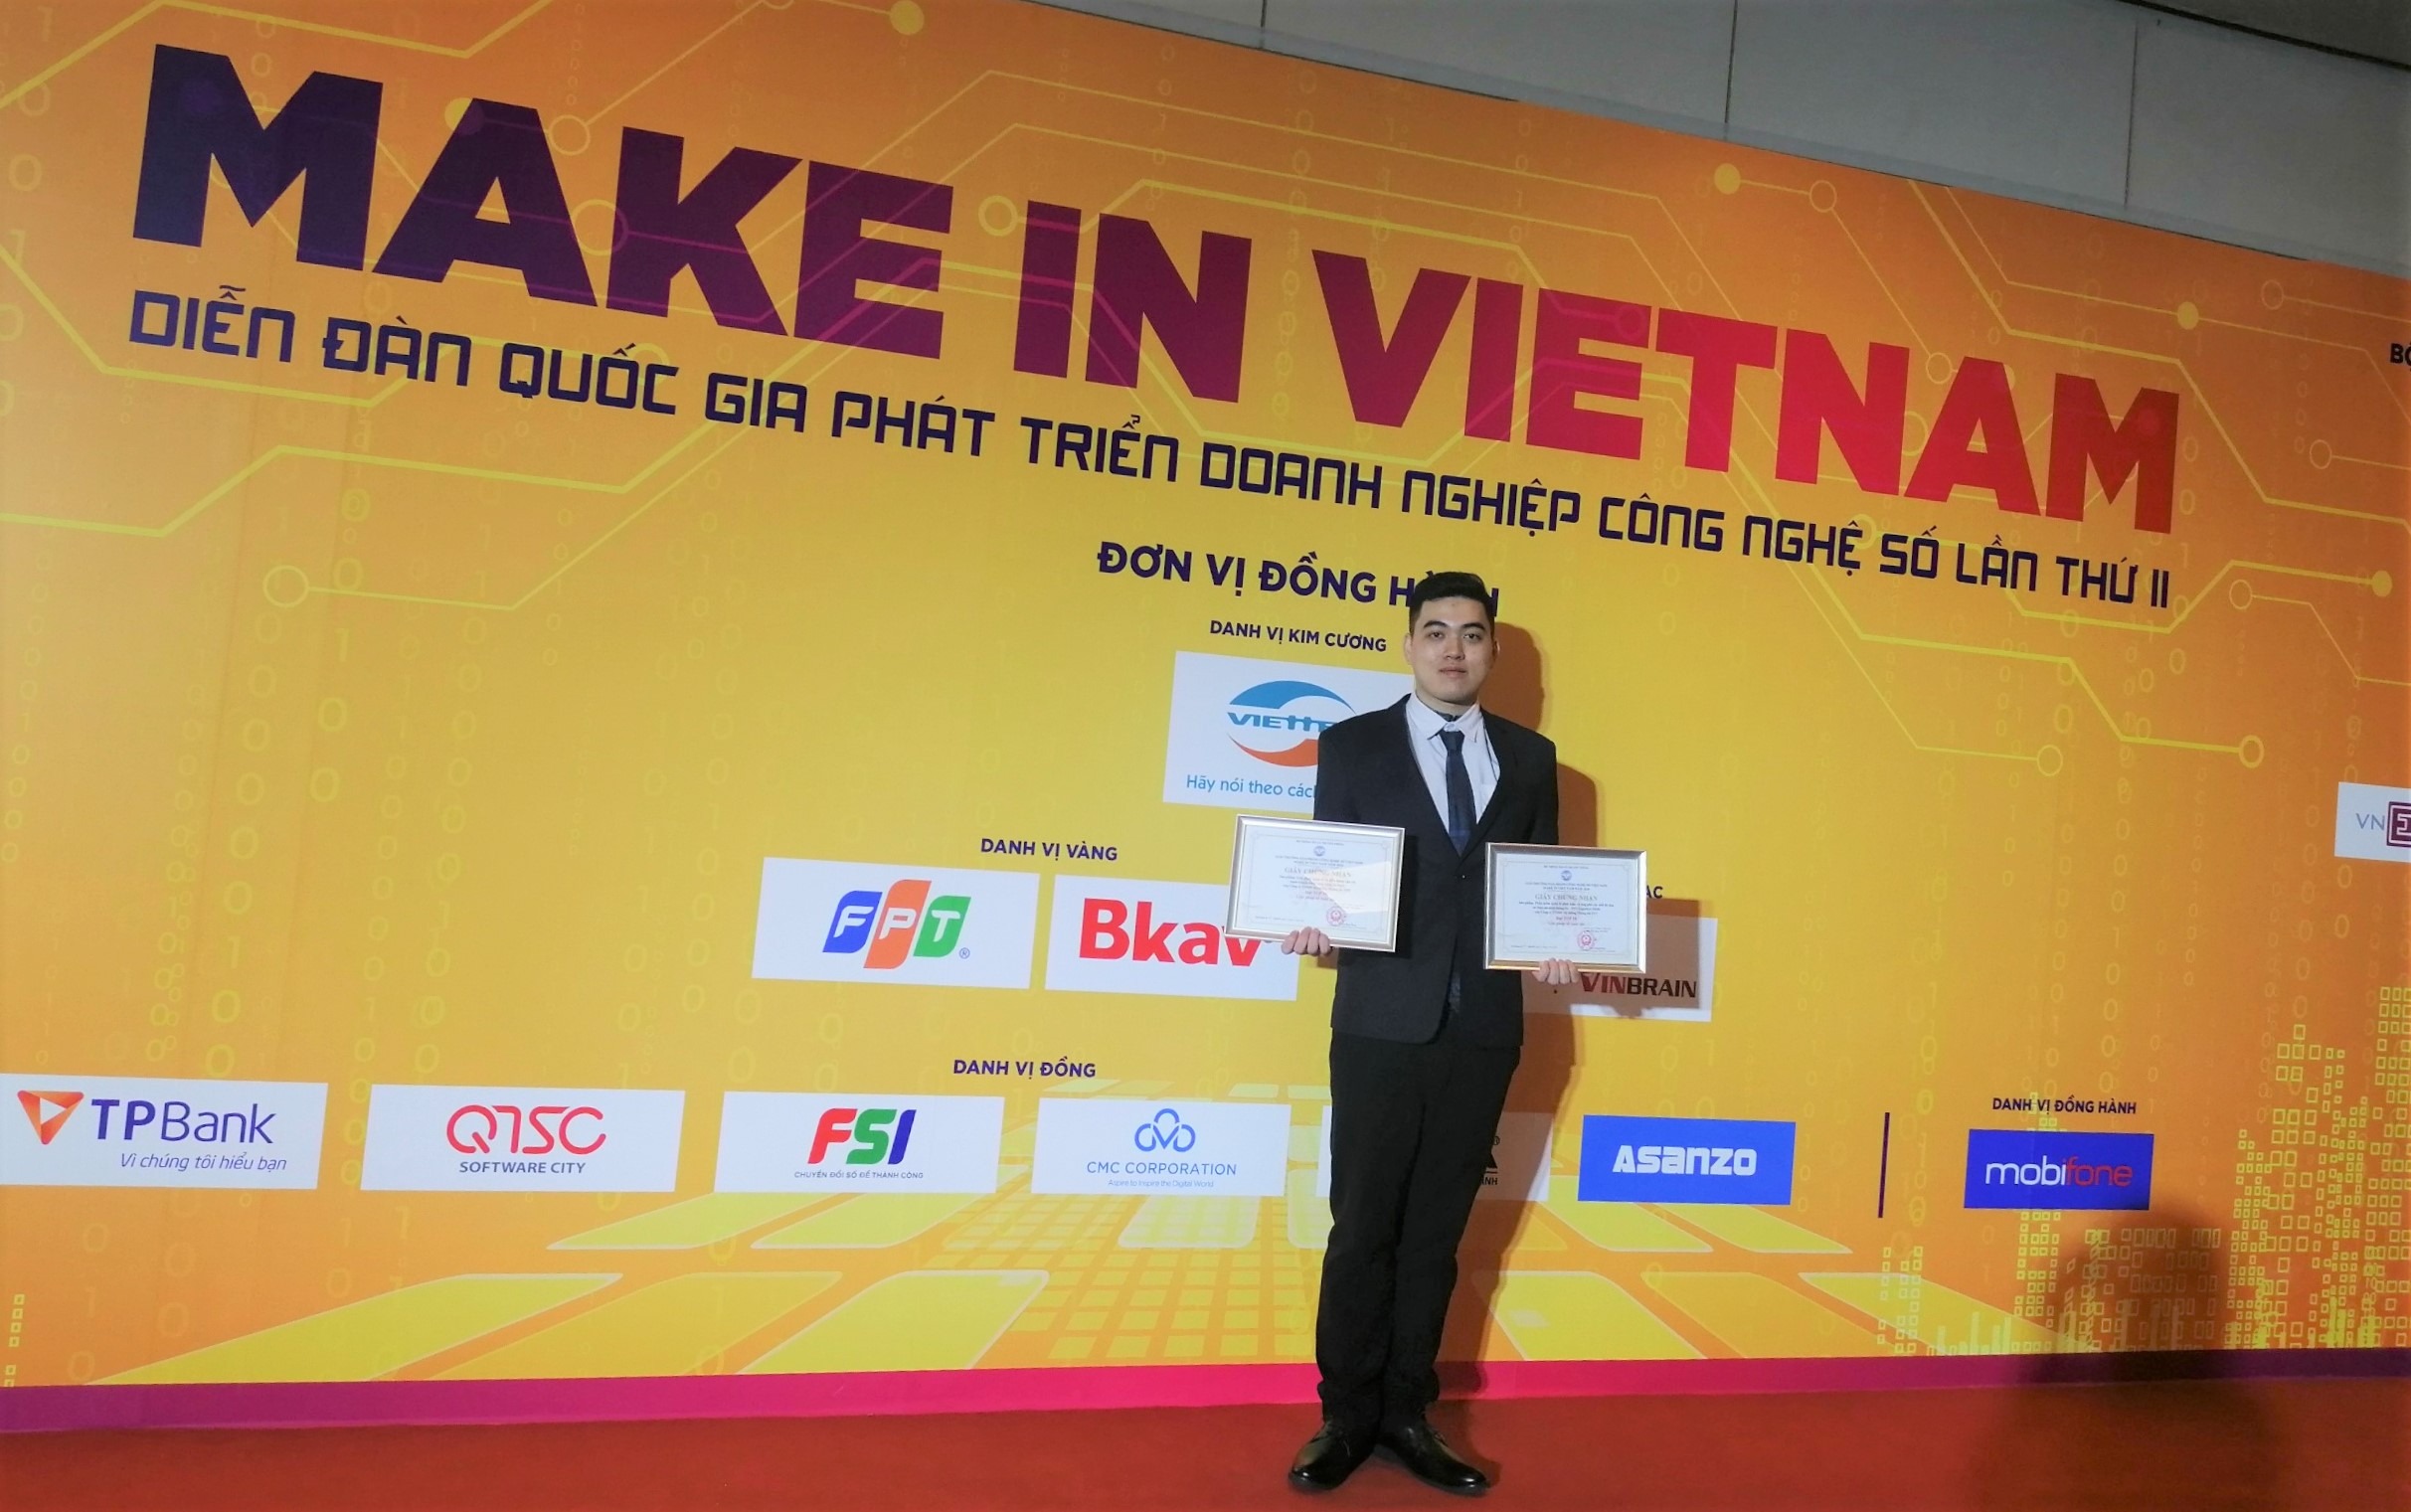 Phần mềm quản lý phát hiện và ứng phó các mối đe dọa an toàn an ninh thông tin – FPT.EagleEye MDR đạt TOP 10 Giải pháp số xuất sắc – Giải thưởng Sản phẩm công nghệ số Make in Viet Nam 2020